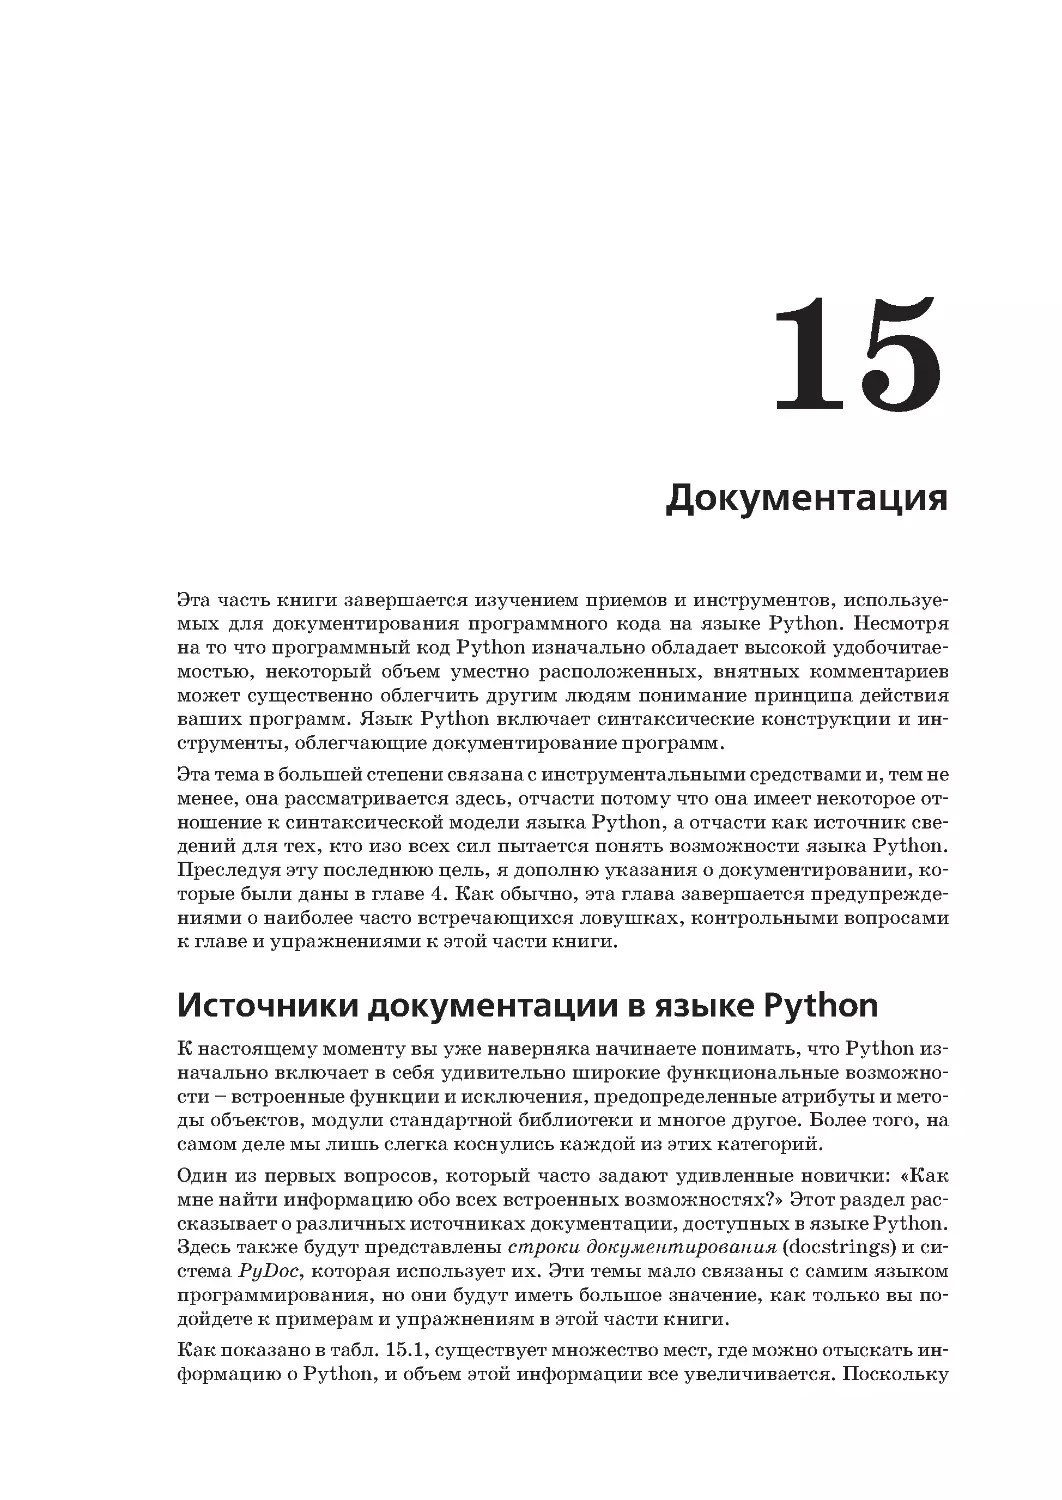 Глава 15.
Источники документации в языке Python